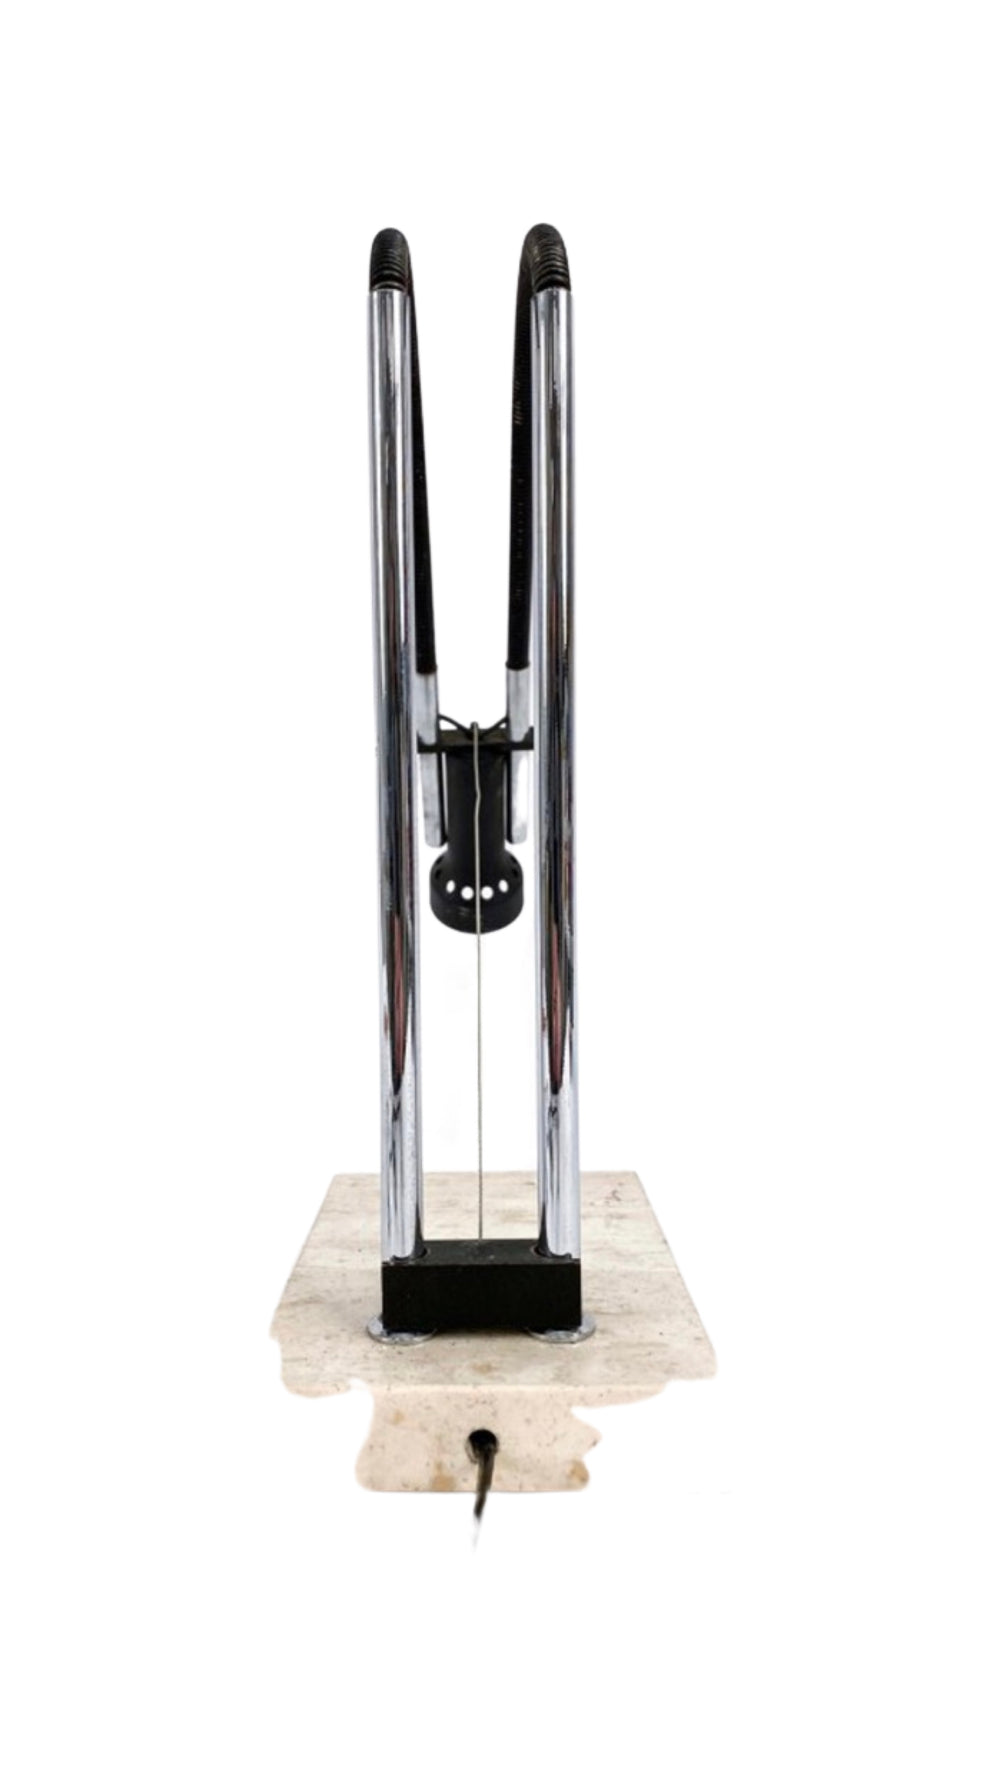 Angelo Lelii model 14165 "Flexa" table lamp for Arredoluce Italy